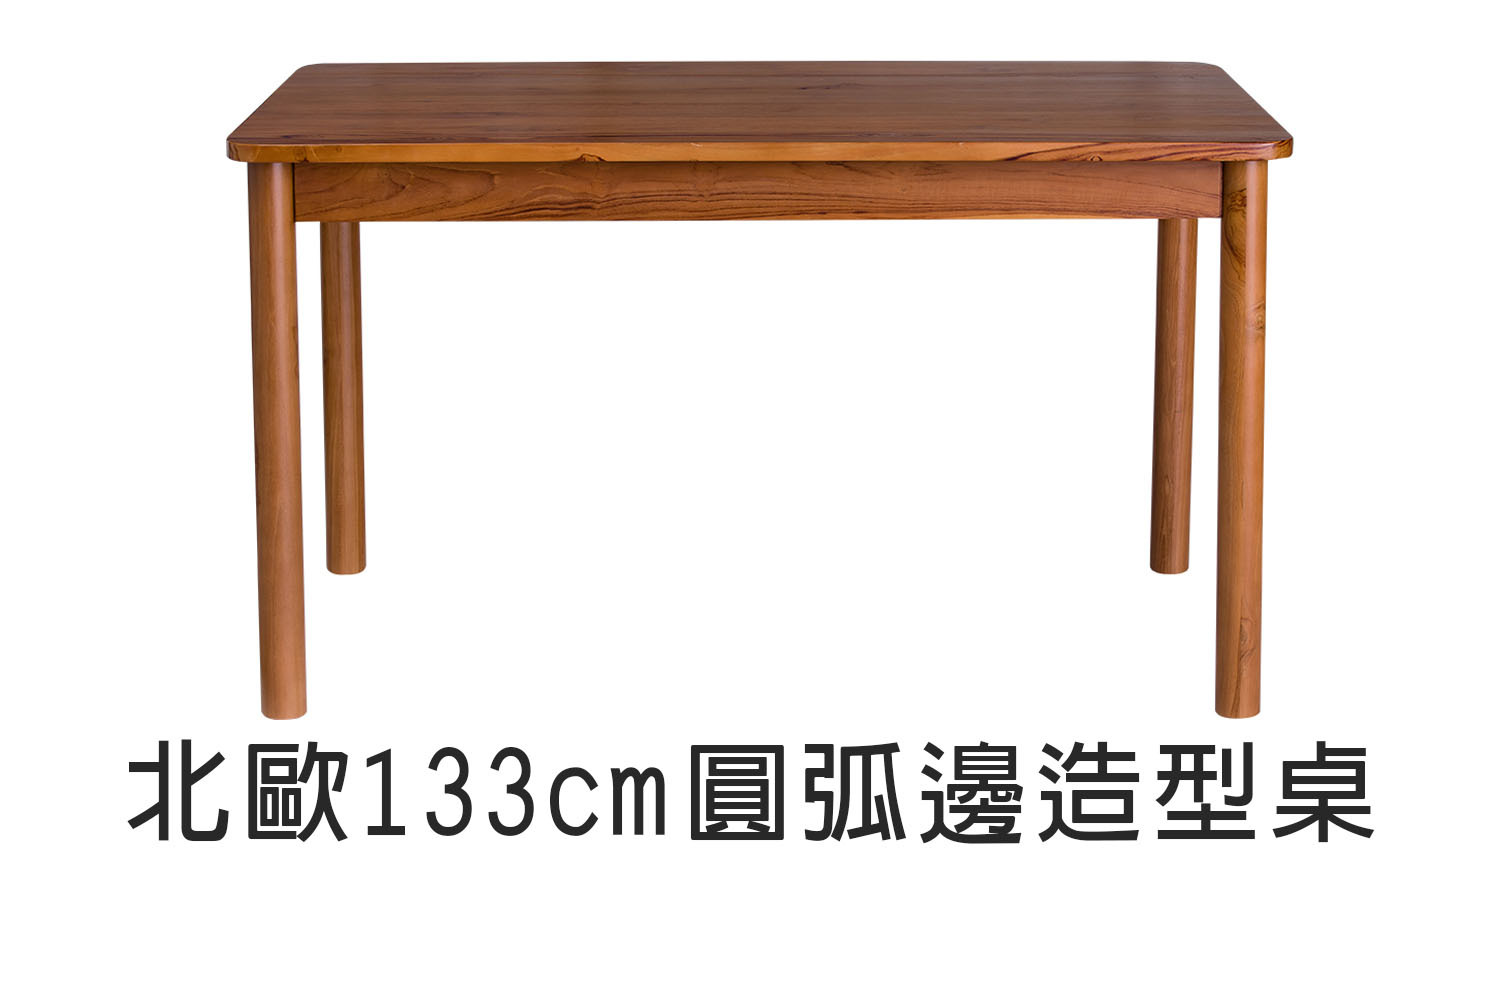 北歐風圓弧邊造型實木餐桌 柚木款-133cm WMDT003T